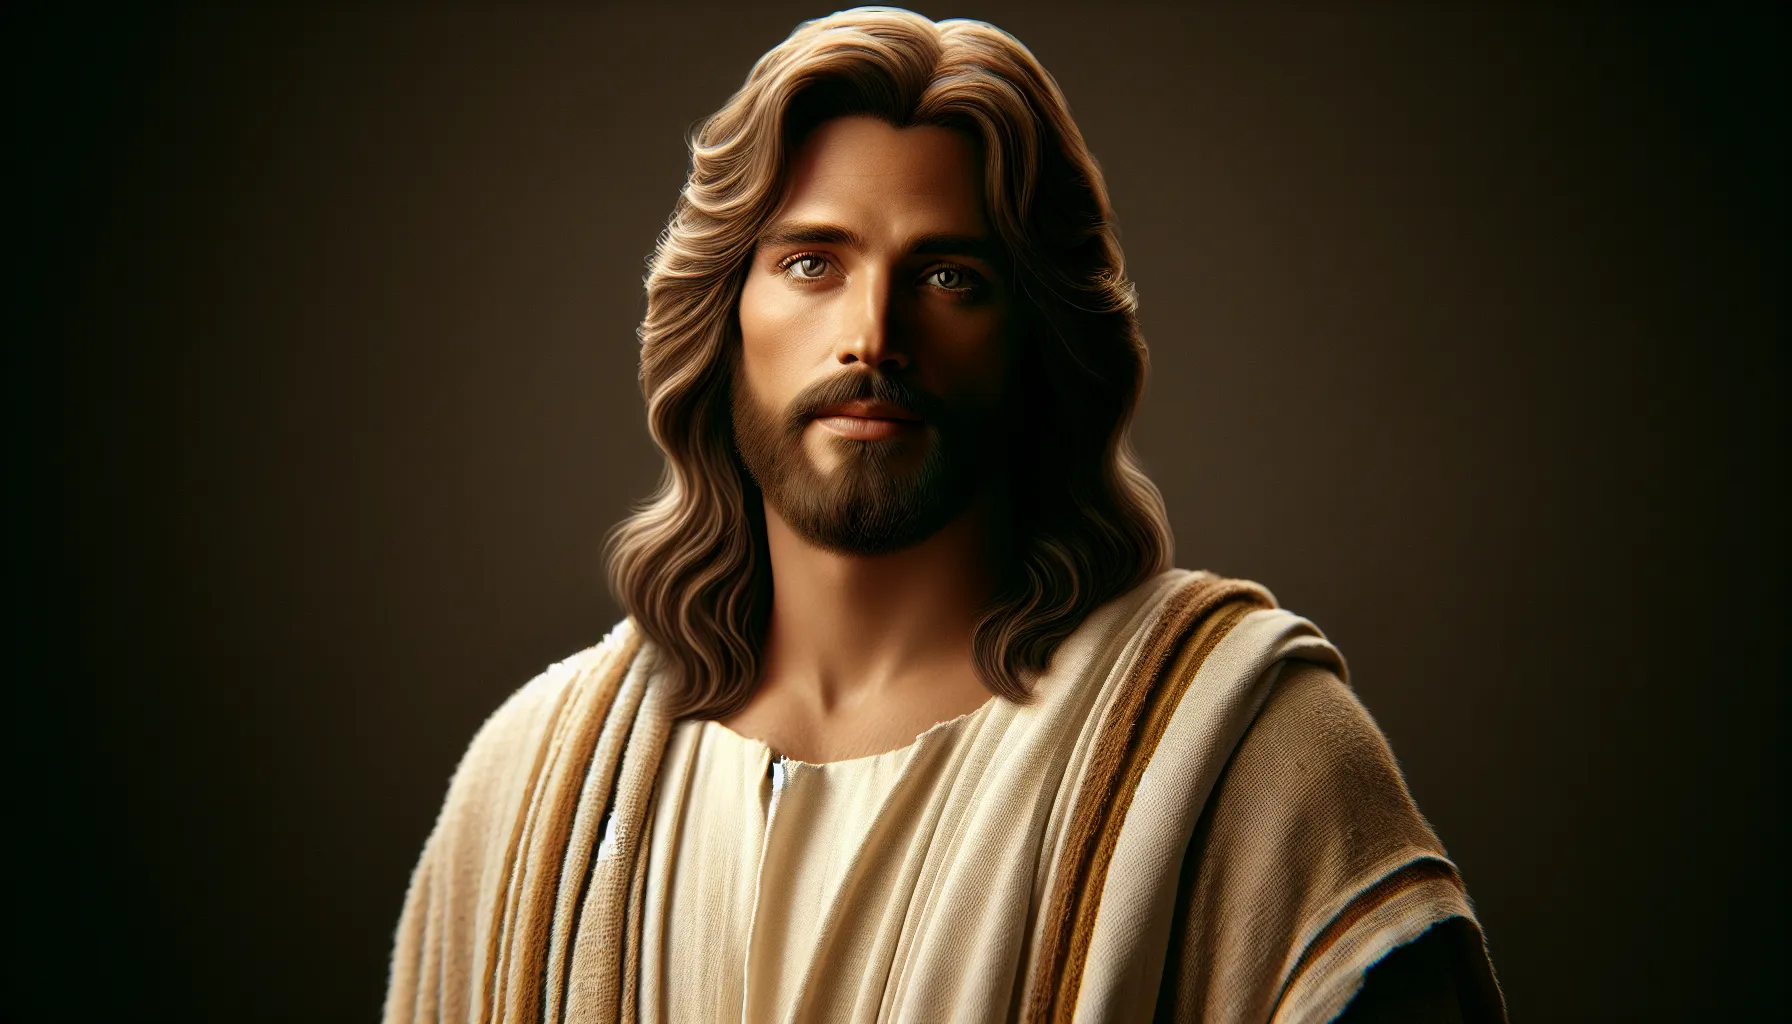 Representación artística de Jesús según la tradición cristiana.